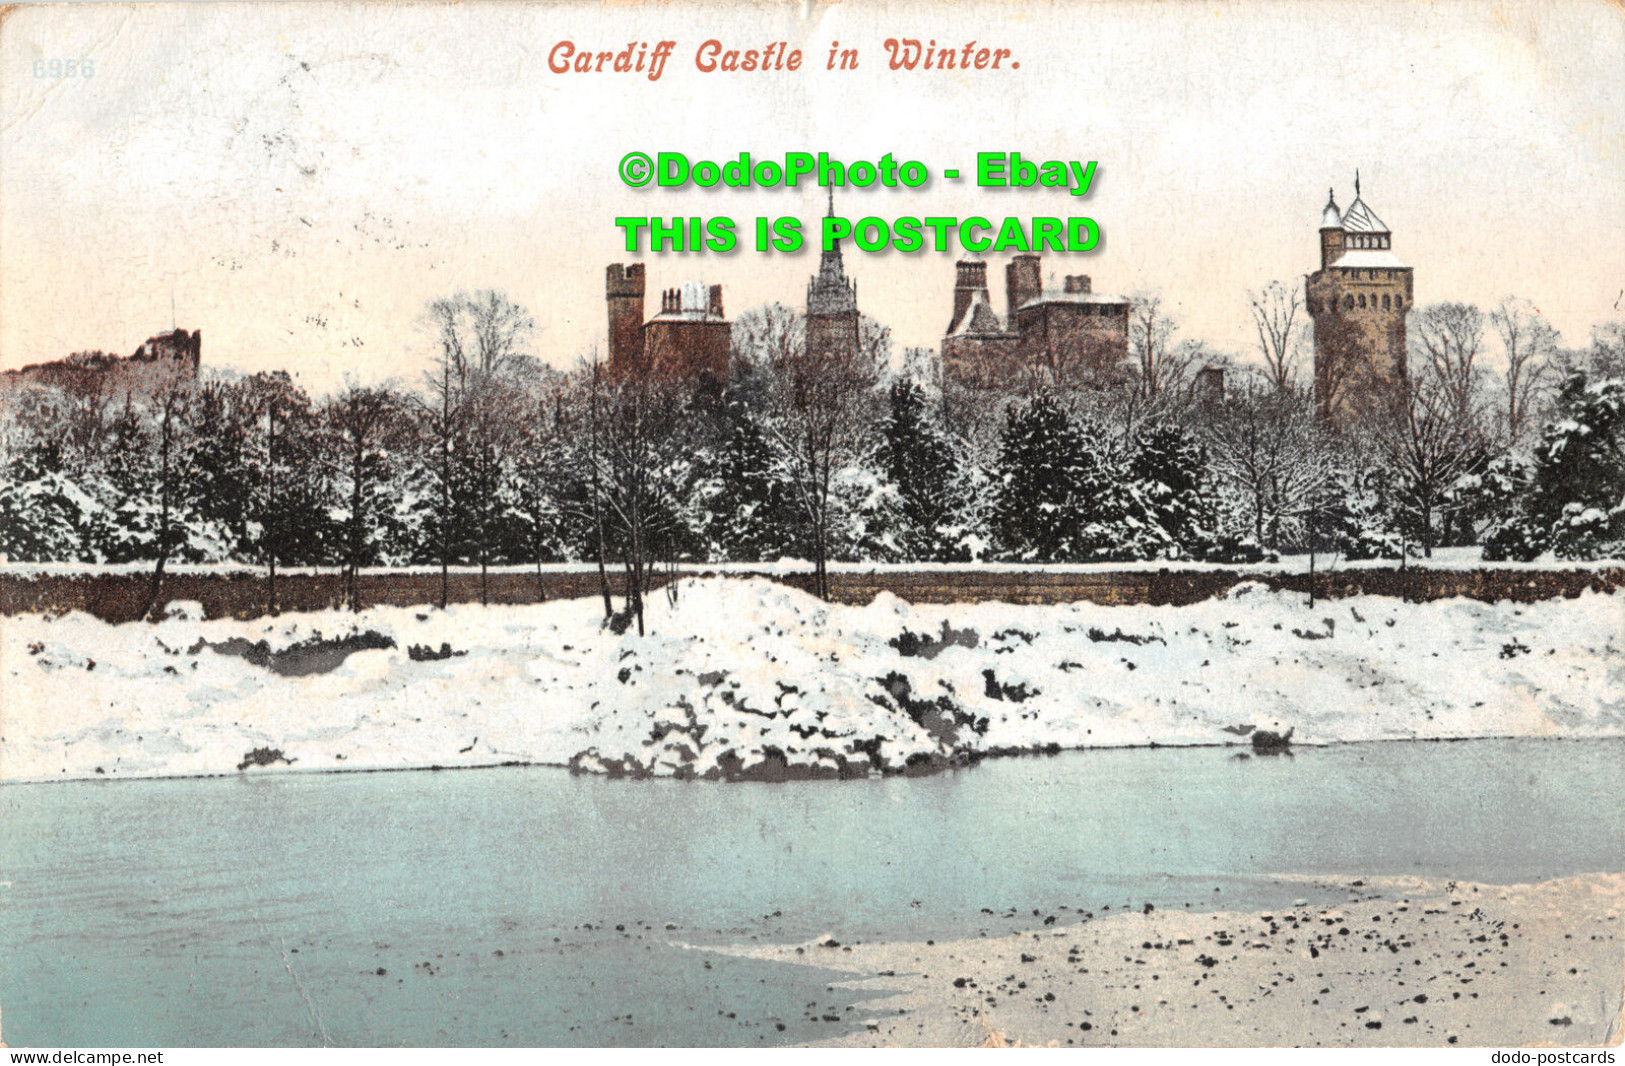 R415007 Cardiff Castle In Winter. Postcard. 1905 - Mondo